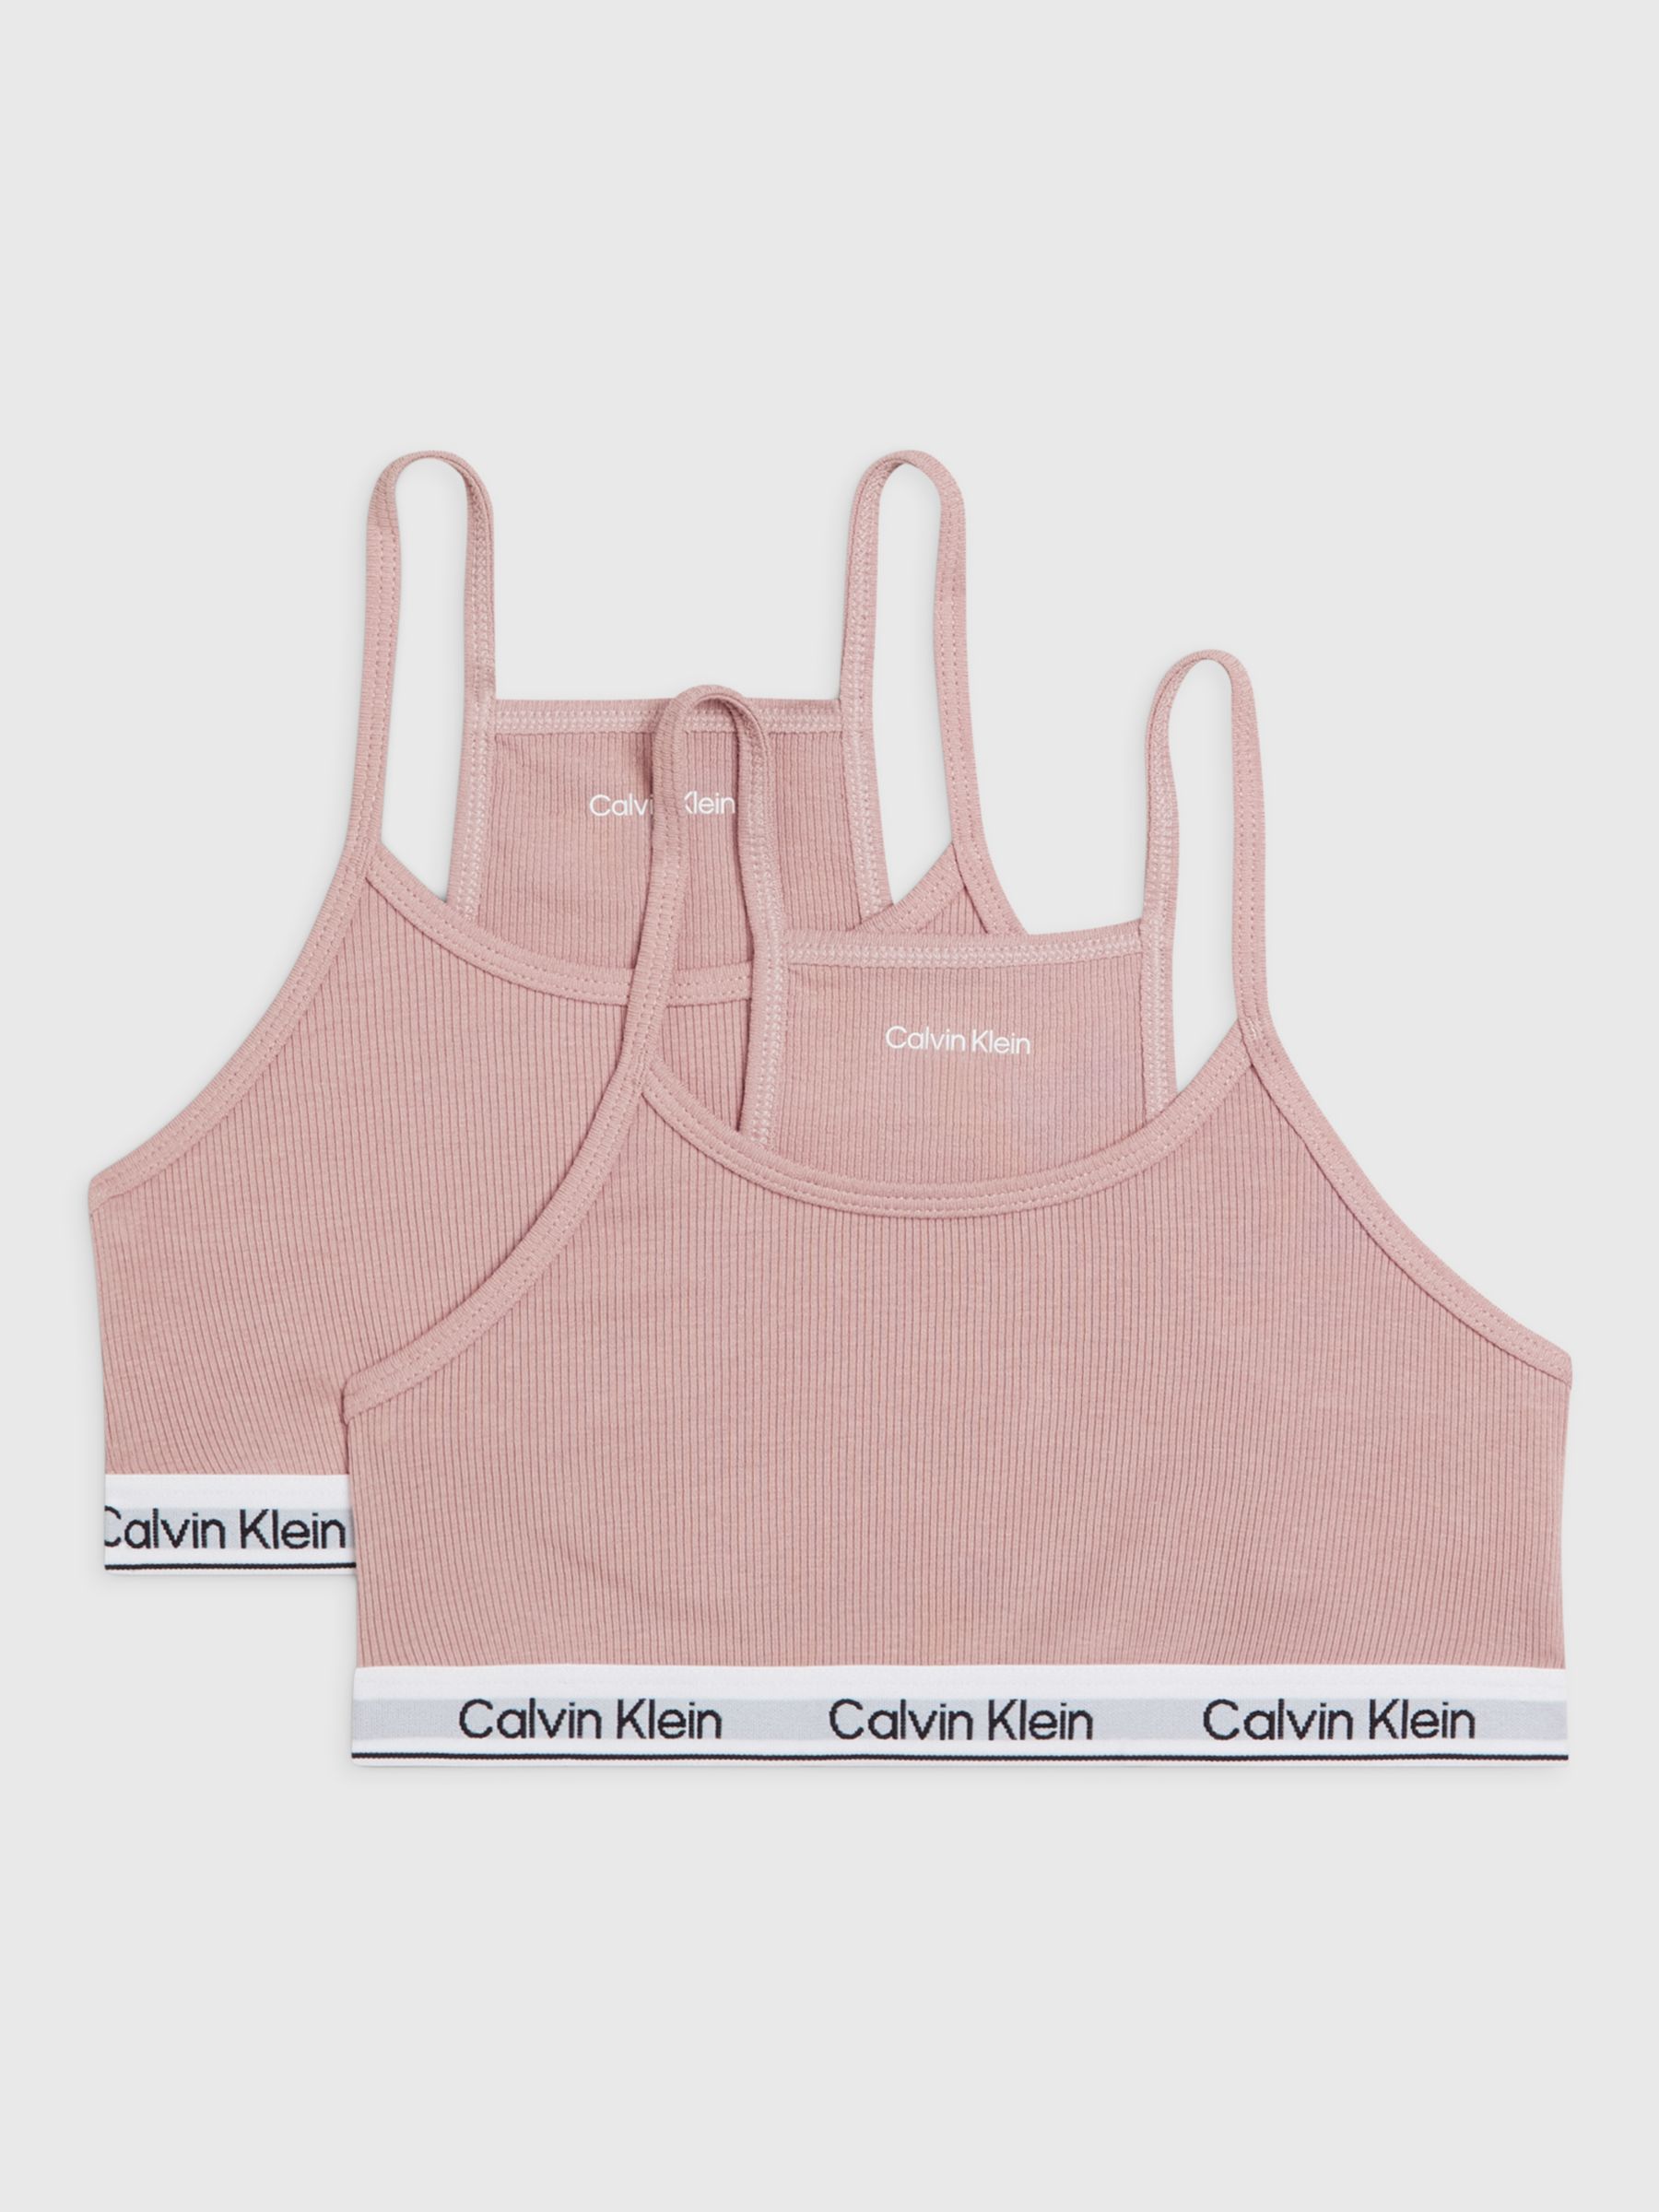 Buy Calvin Klein Kids' Racer Back Bralette, Pink Online at johnlewis.com